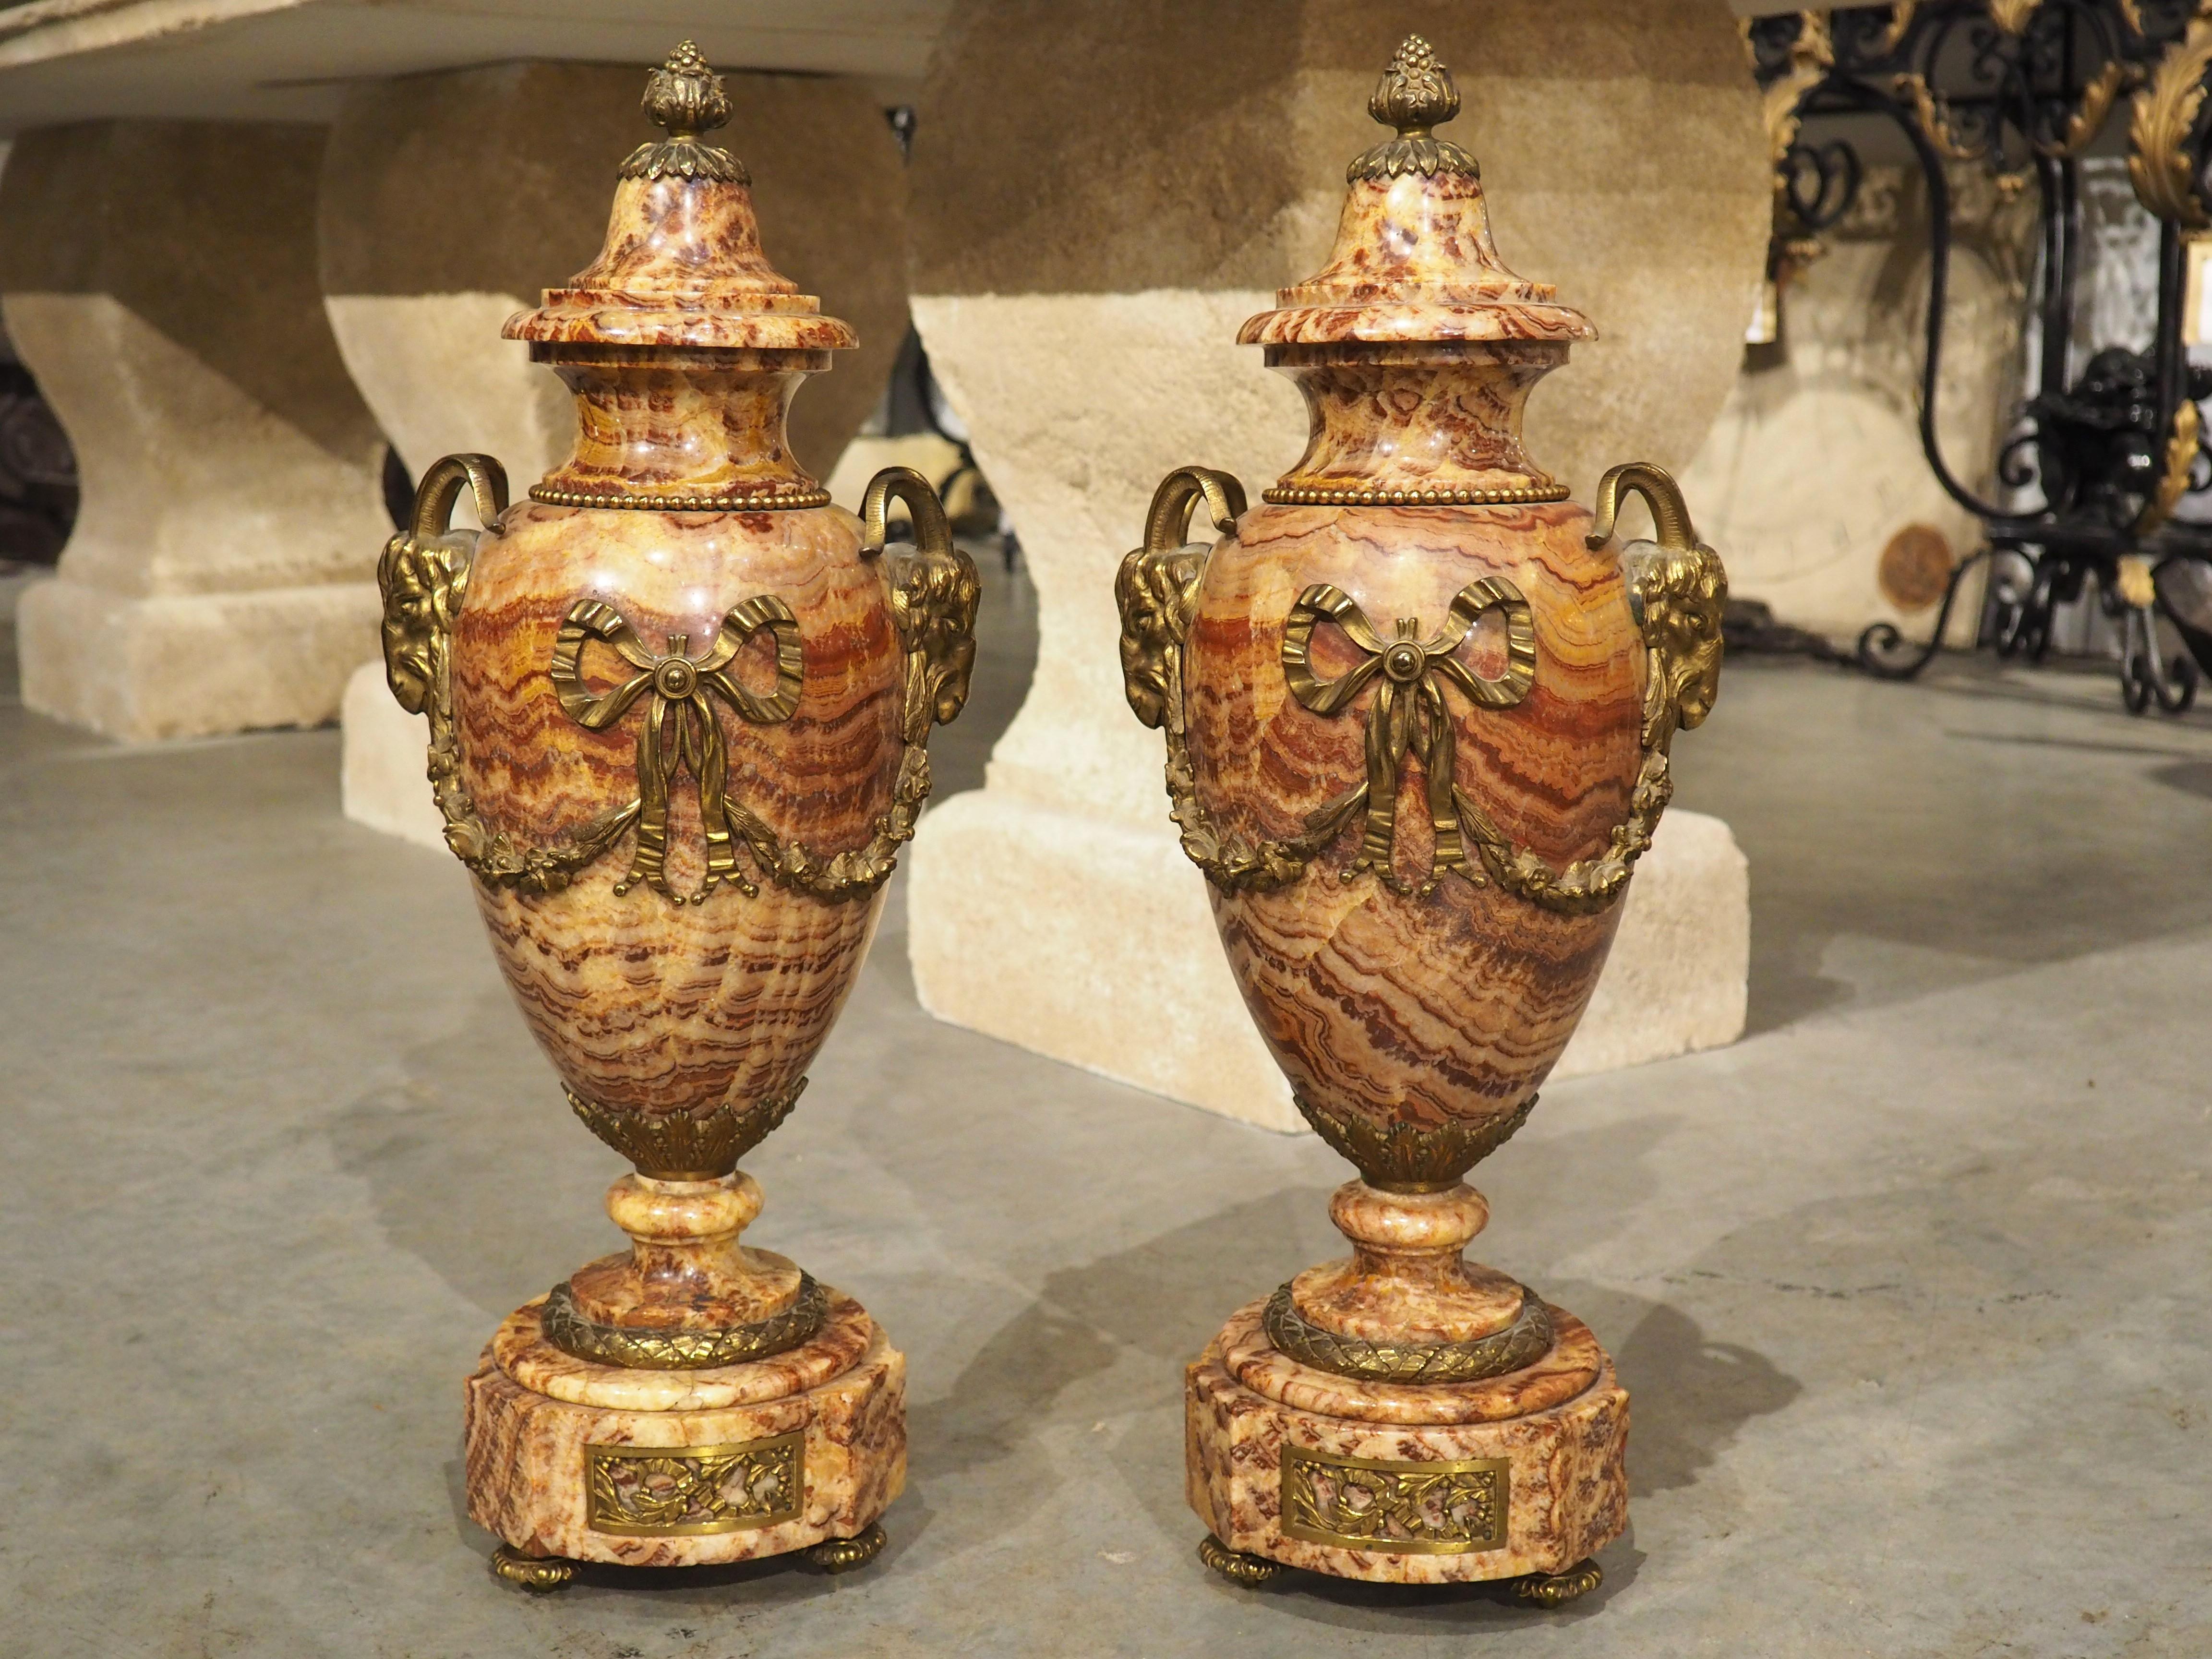 Obwohl der Ursprung der Kassetten auf das antike Europa und Asien zurückgeht, entwickelten die Kassetten erst im späten 18. Jahrhundert ihre urnenähnliche Form, wie man sie bei diesem Paar Kassetten aus Marmor und vergoldeter Bronze sieht. Unser